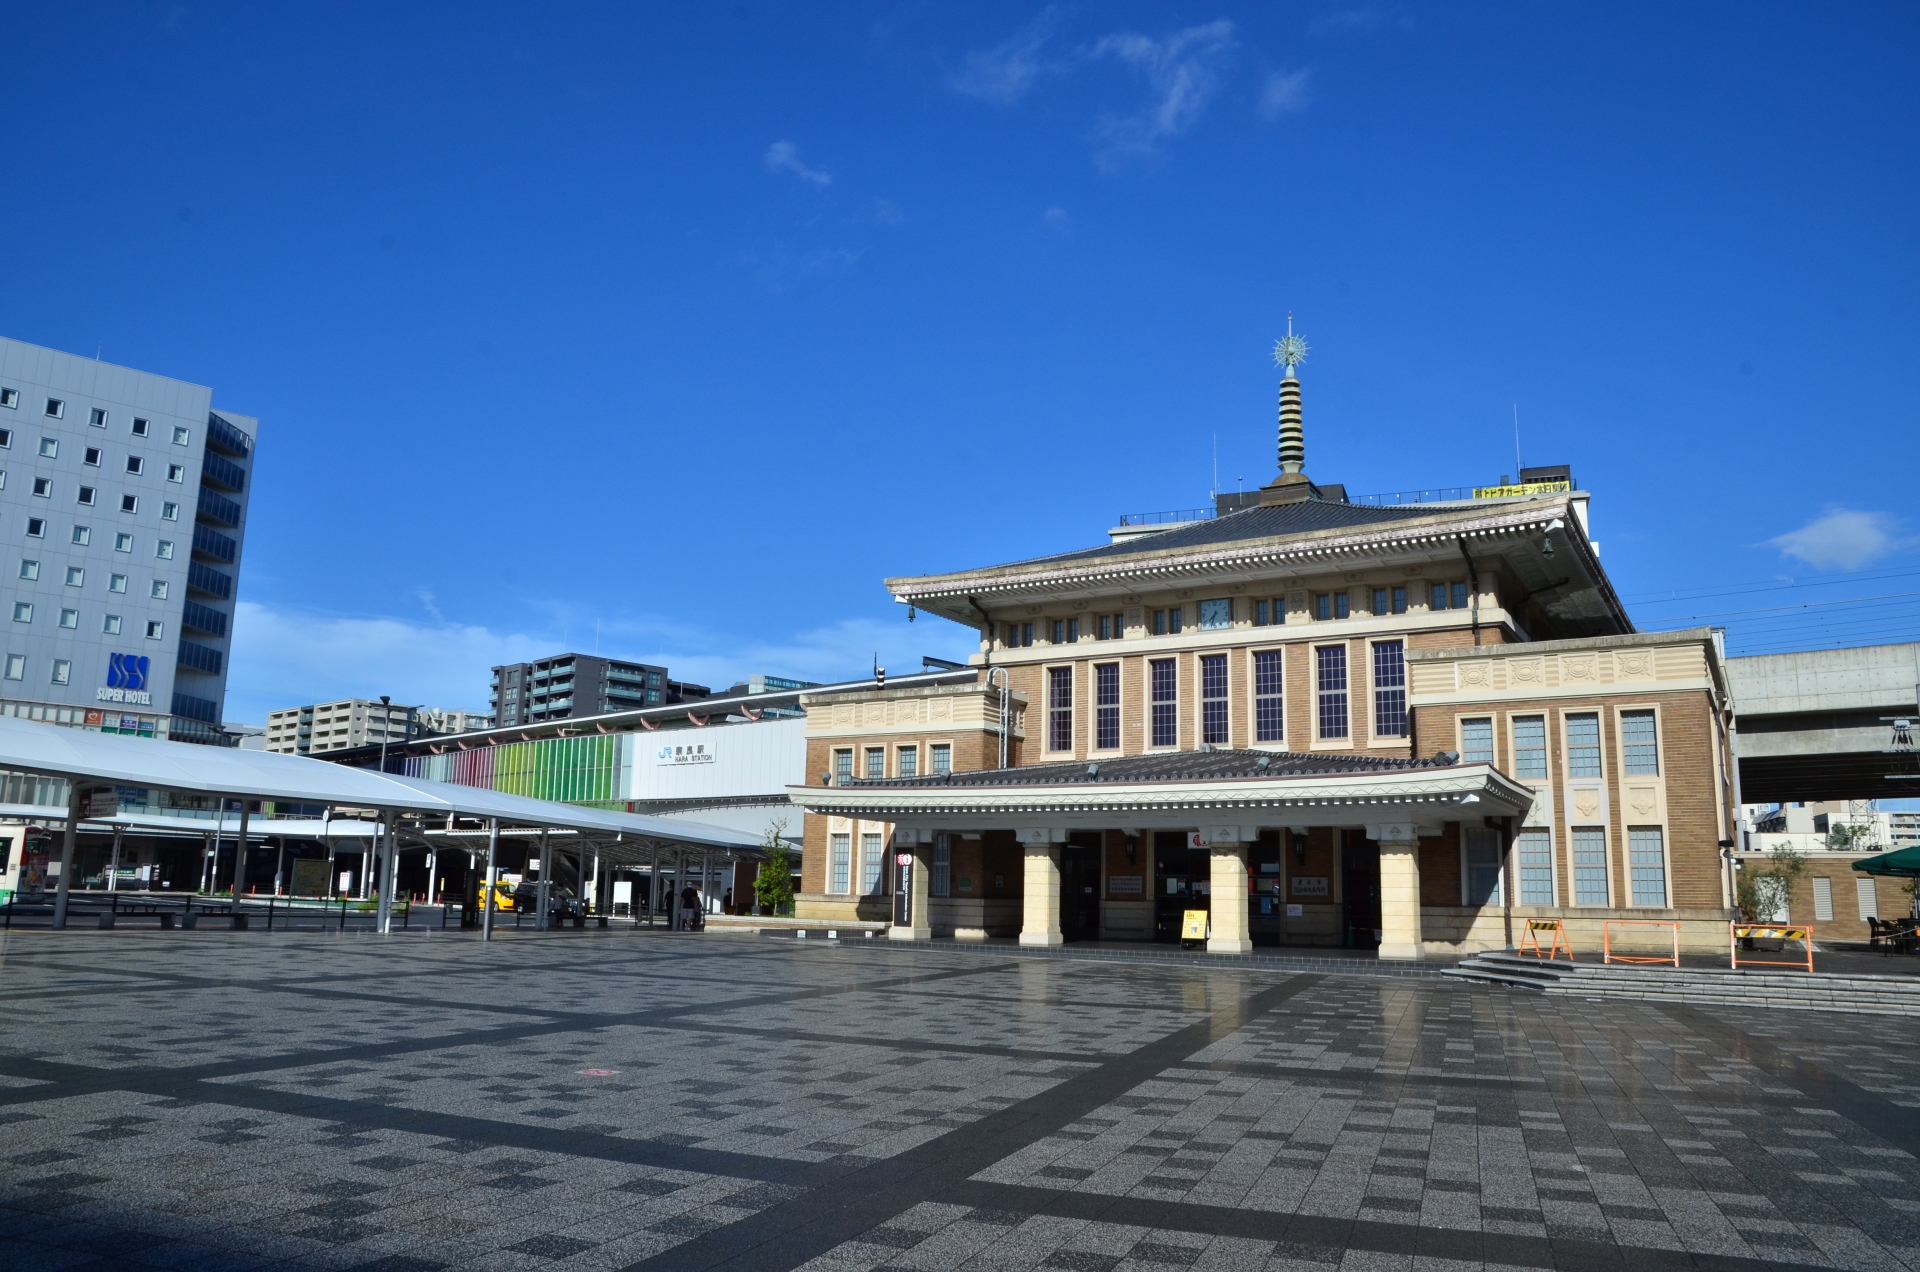 奈良の玄関口とされる、JR奈良駅。関西本線（大和路線）と桜井線（万葉まほろば線）が乗り入れている。2010年の平城遷都1300年記念事業に合わせて駅の高架事業が行われ、桜井線が高架化された。